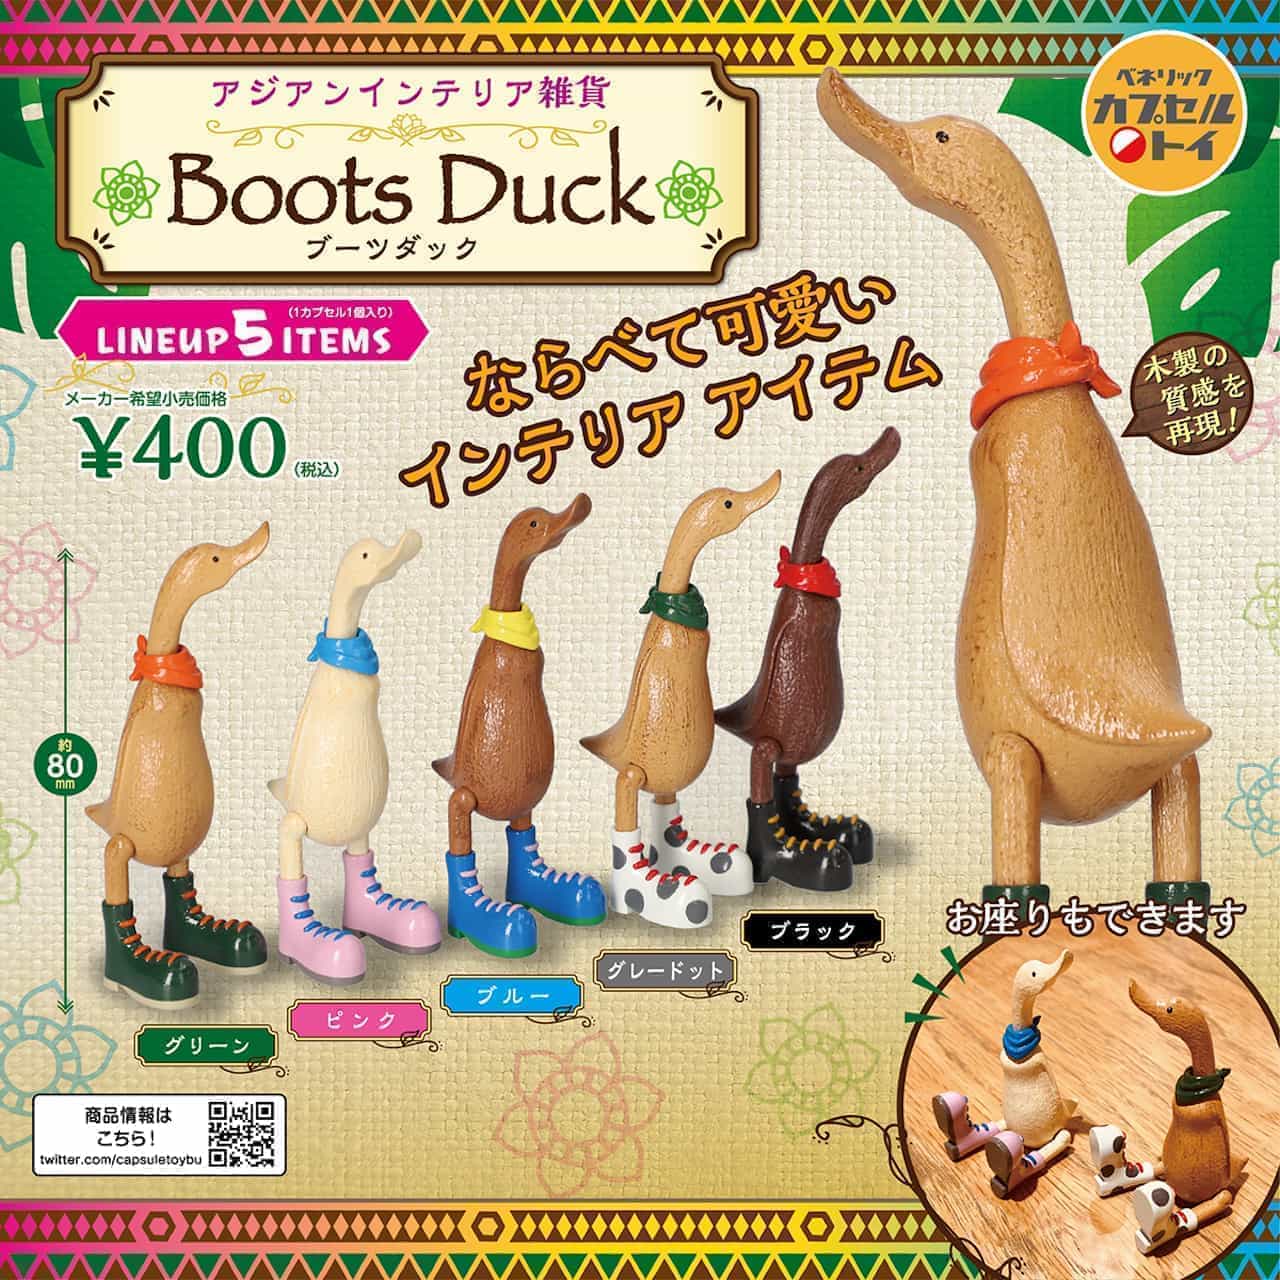 Benelic Asian Interior Goods - Boots Duck